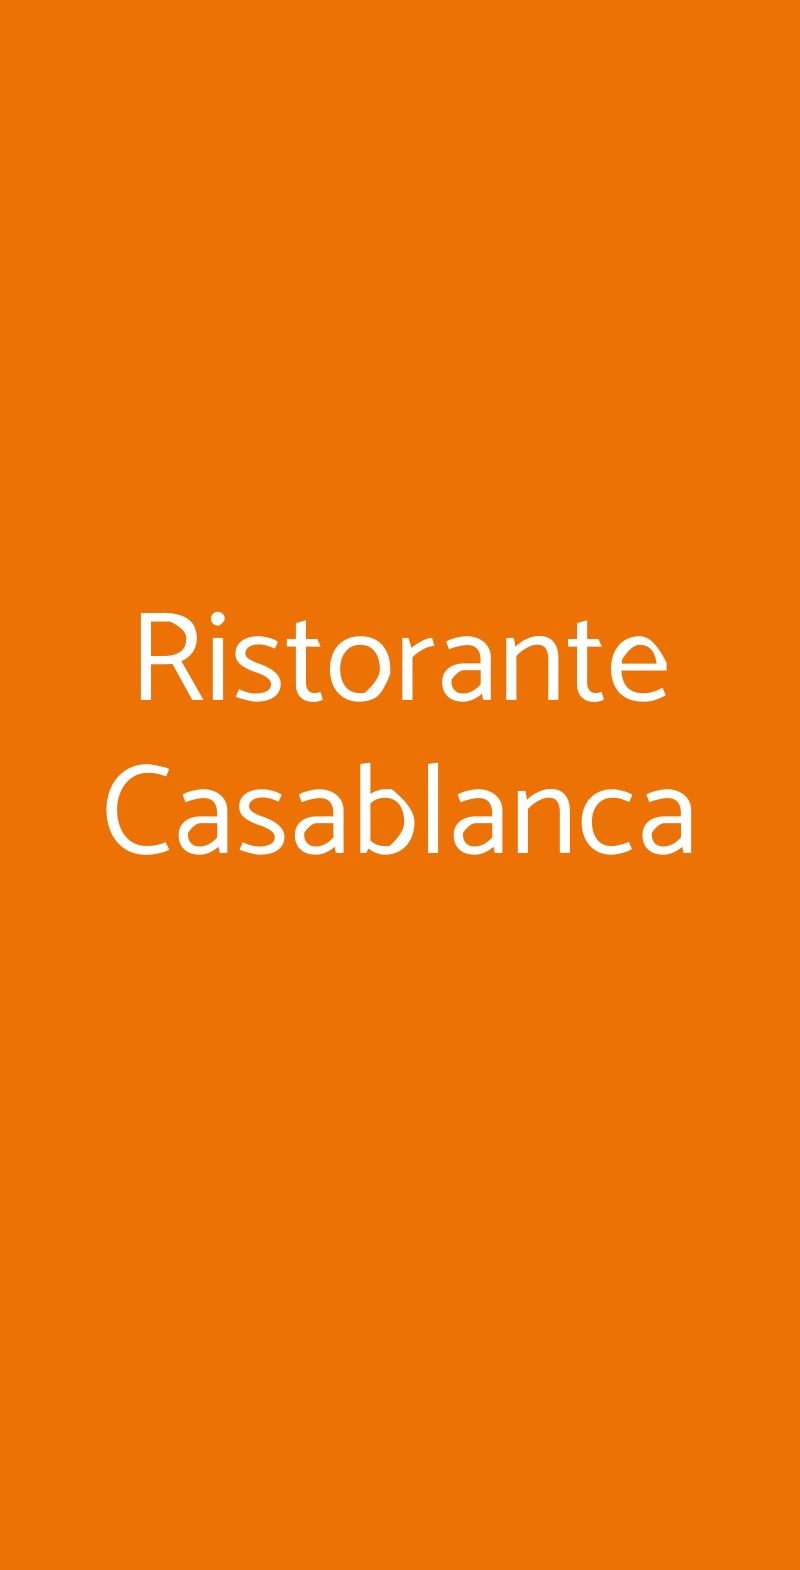 Ristorante Casablanca Parma menù 1 pagina